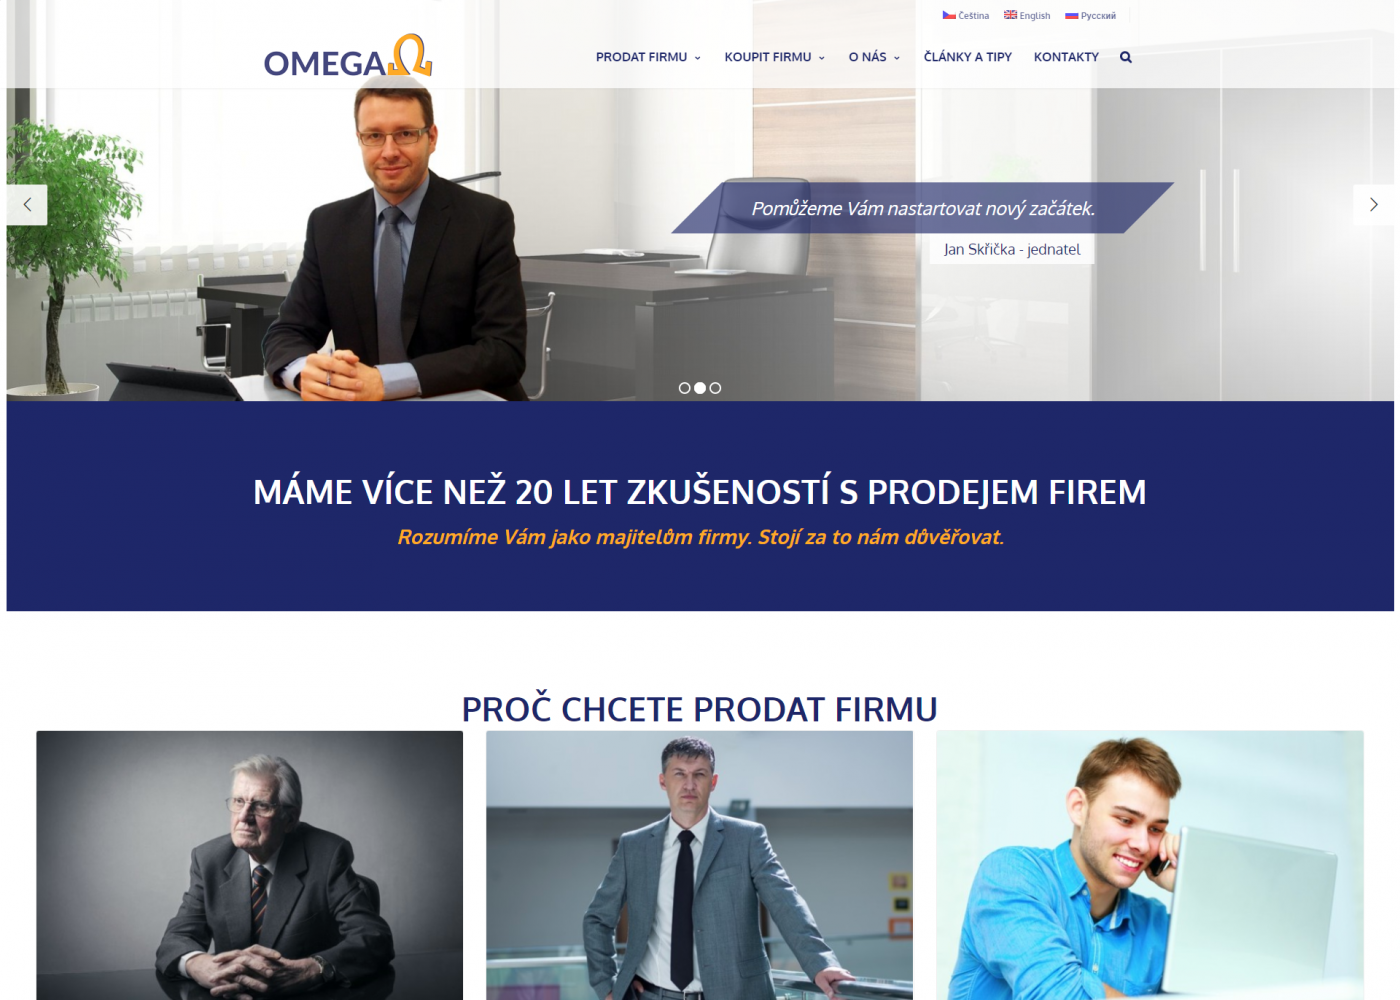 Tvorba nového webu prodavame-firmy.cz - Porovnání, stará verze #1